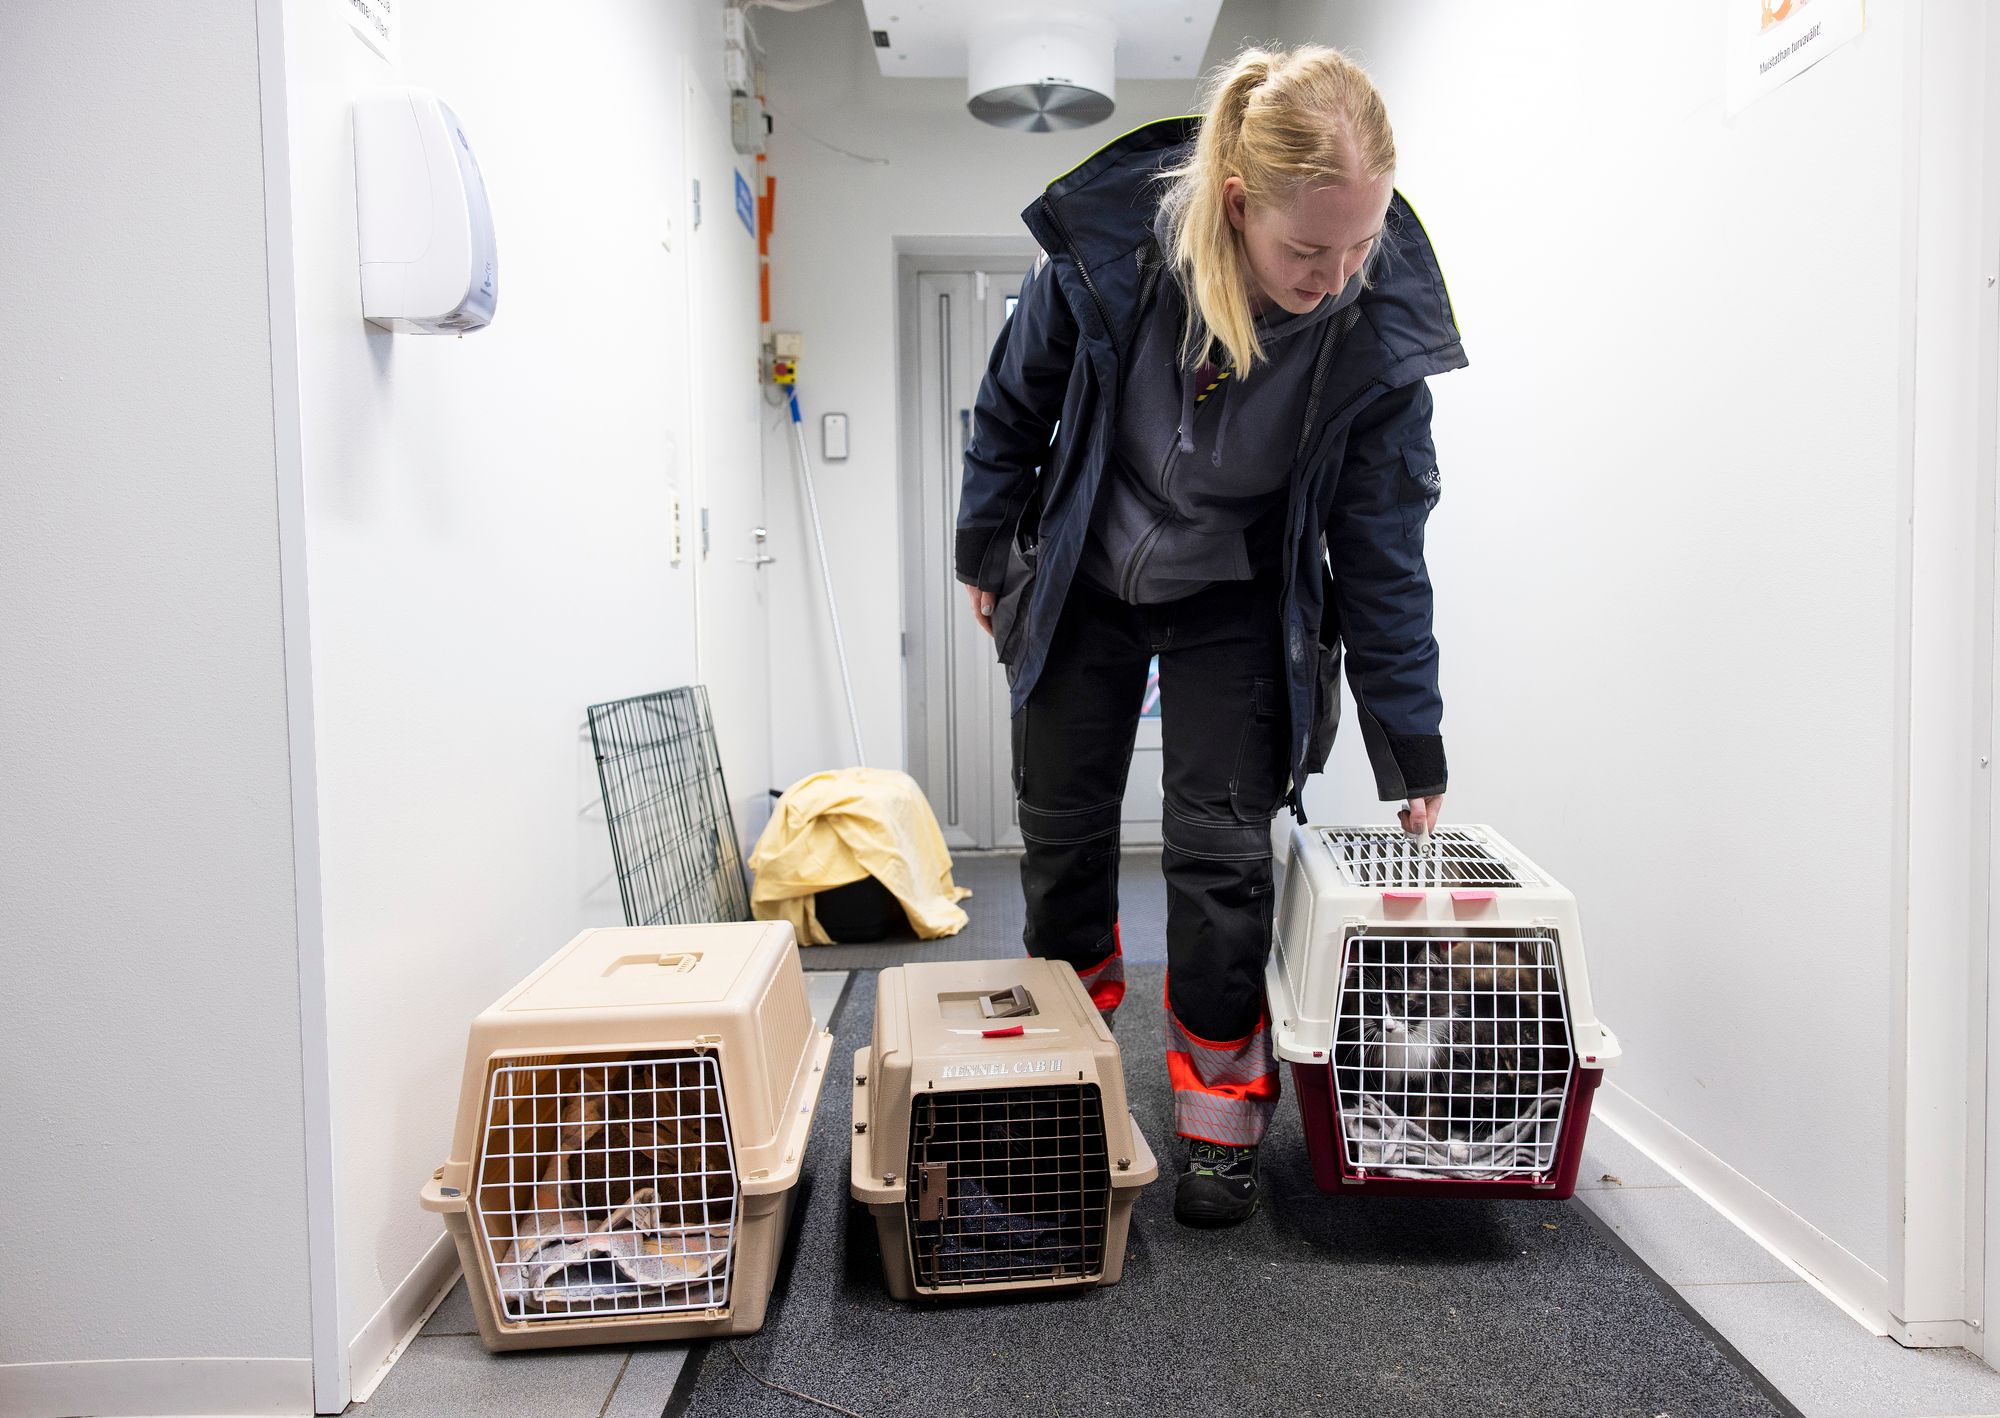 Eläintenkuljettaja Veera Pöllänen tuo uusia kissoja taloon Viikin löytöeläintalosta. © Tommi Tuomi